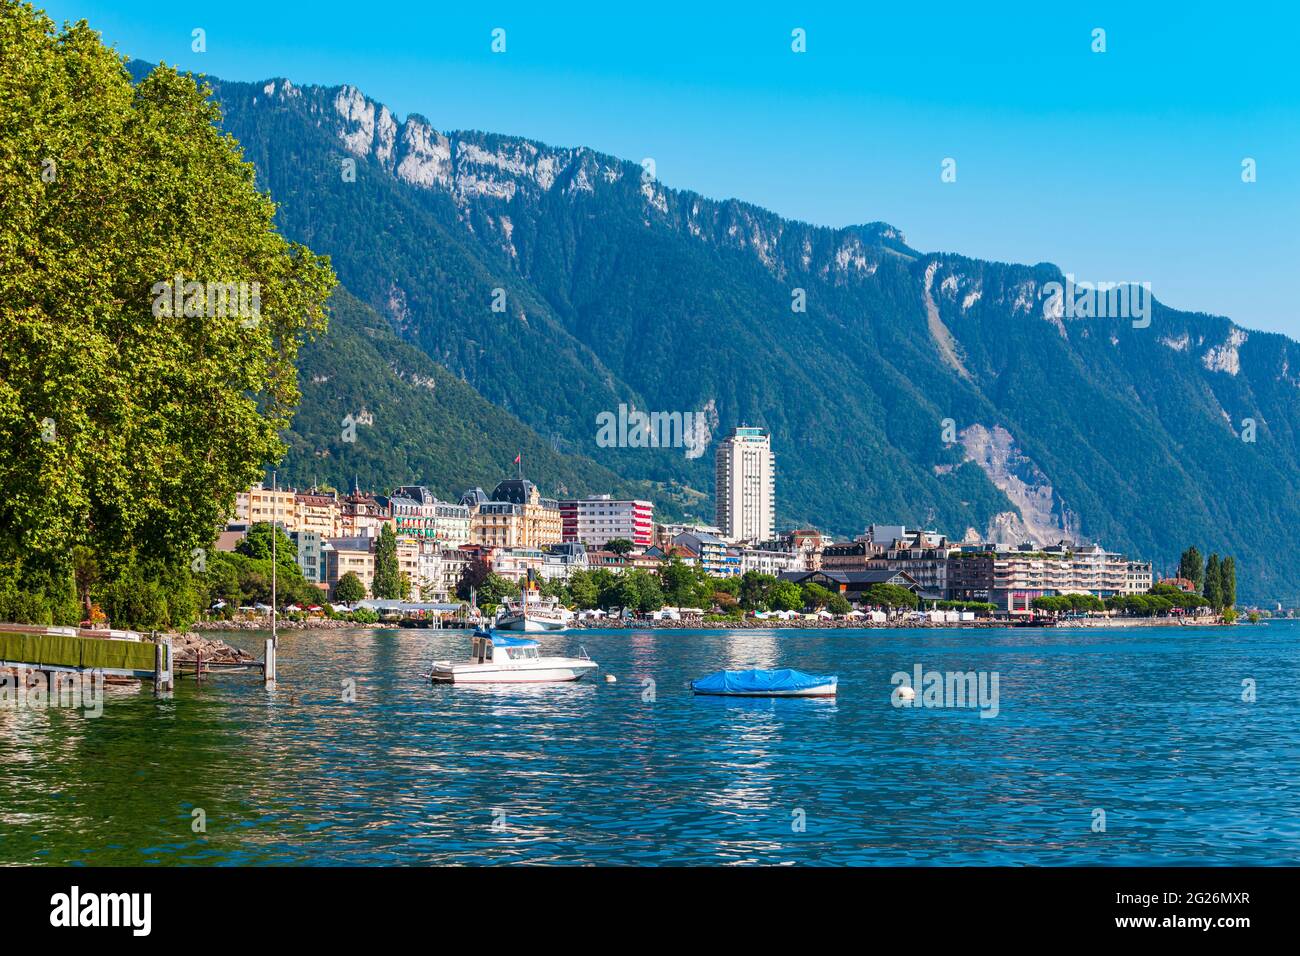 Montreux Hafen mit Yachten und Boote. Montreux ist eine Stadt am Genfer See, am Fuße der Alpen in der Schweiz Stockfoto